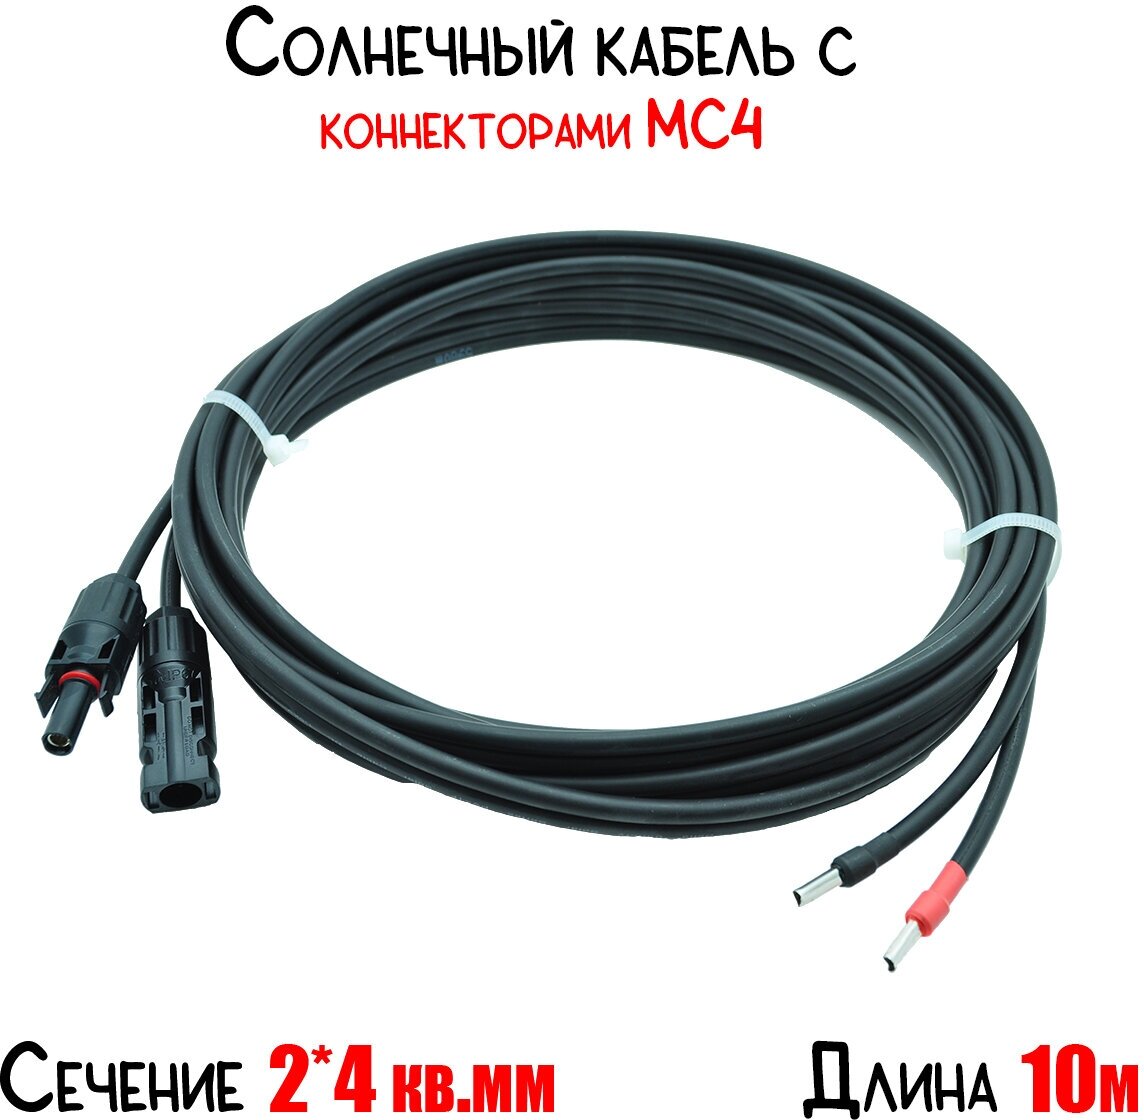 Солнечный кабель двухжильный (+ и -) сечение 4 кв. мм с коннектором МС4, длина 10 метров